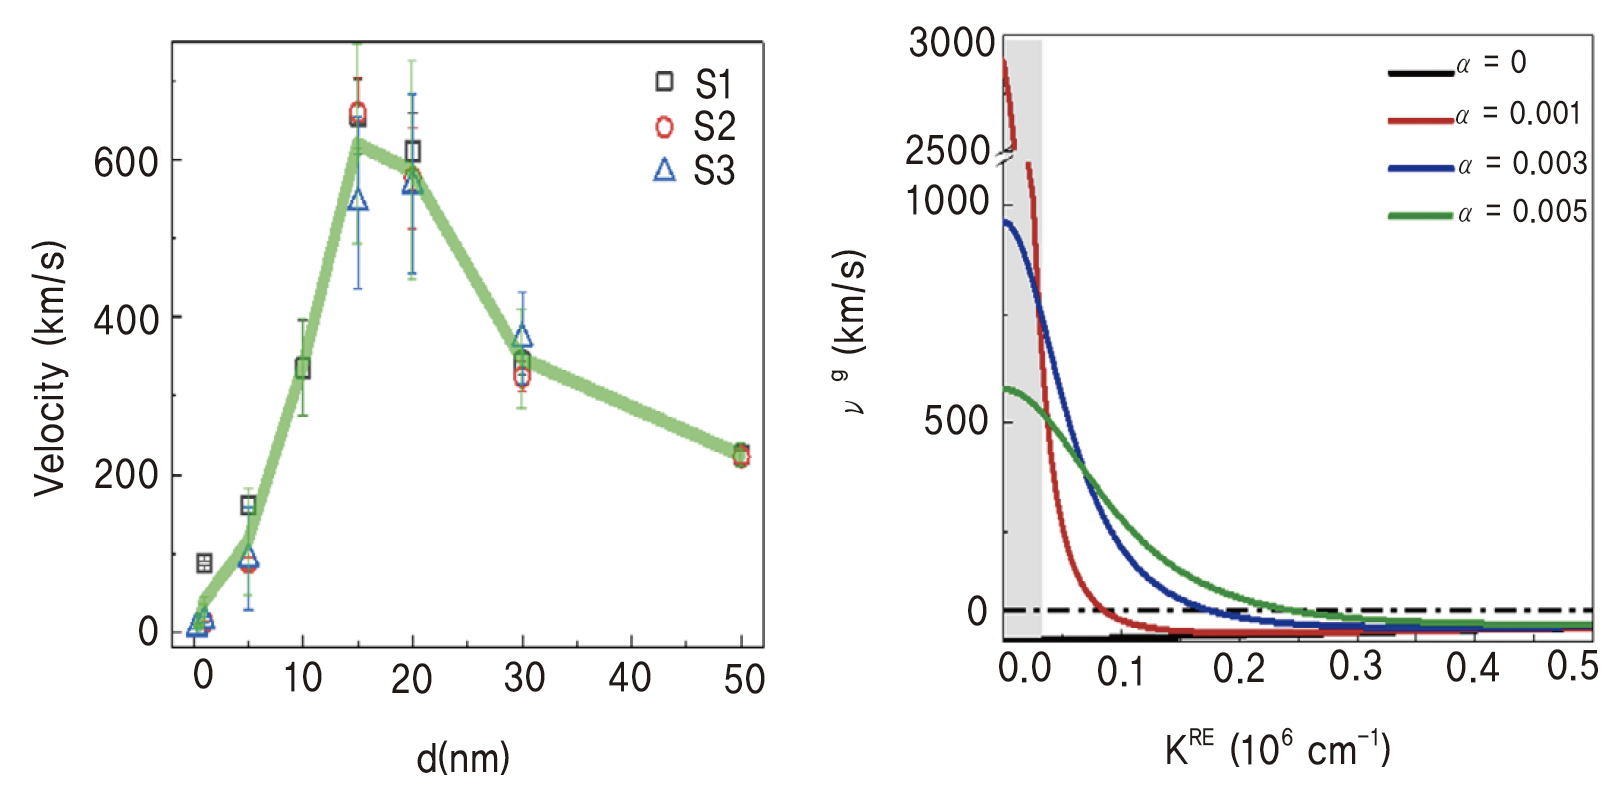 산화 니켈의 두께와 마찰력에 따른 마그논 전송 속도 측정 결과 (이경진, 김세권 교수 제공)(a) NiO 두께(d)에 따른 마그논 속도(좌),​​​​​​​(b) 마찰력에 따른 마그논 군속도(우)